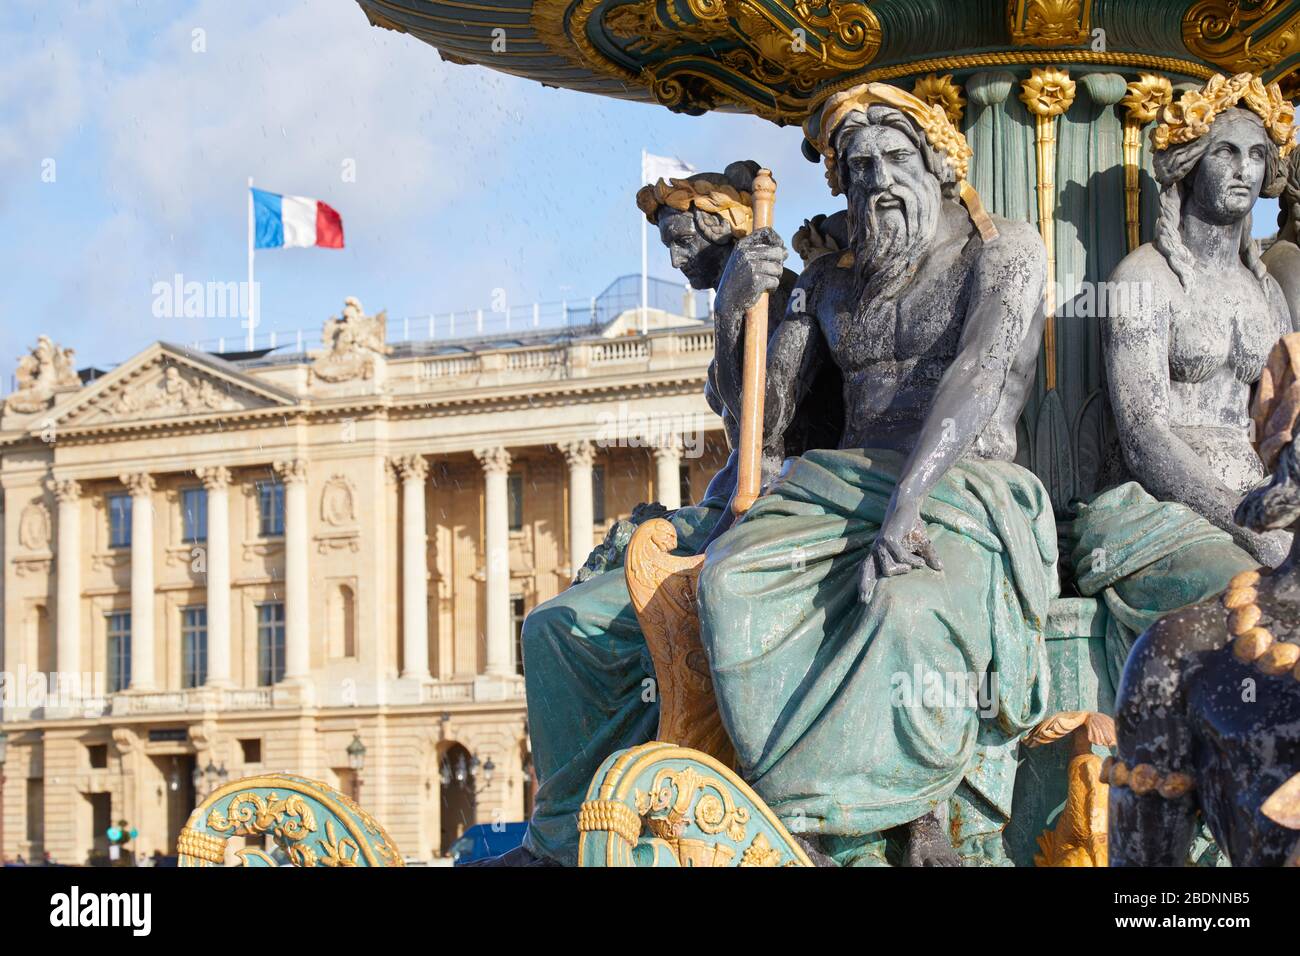 La place de la Concorde fontaine statues avec des détails dorés et bâtiment avec drapeau français dans une journée ensoleillée à Paris Banque D'Images